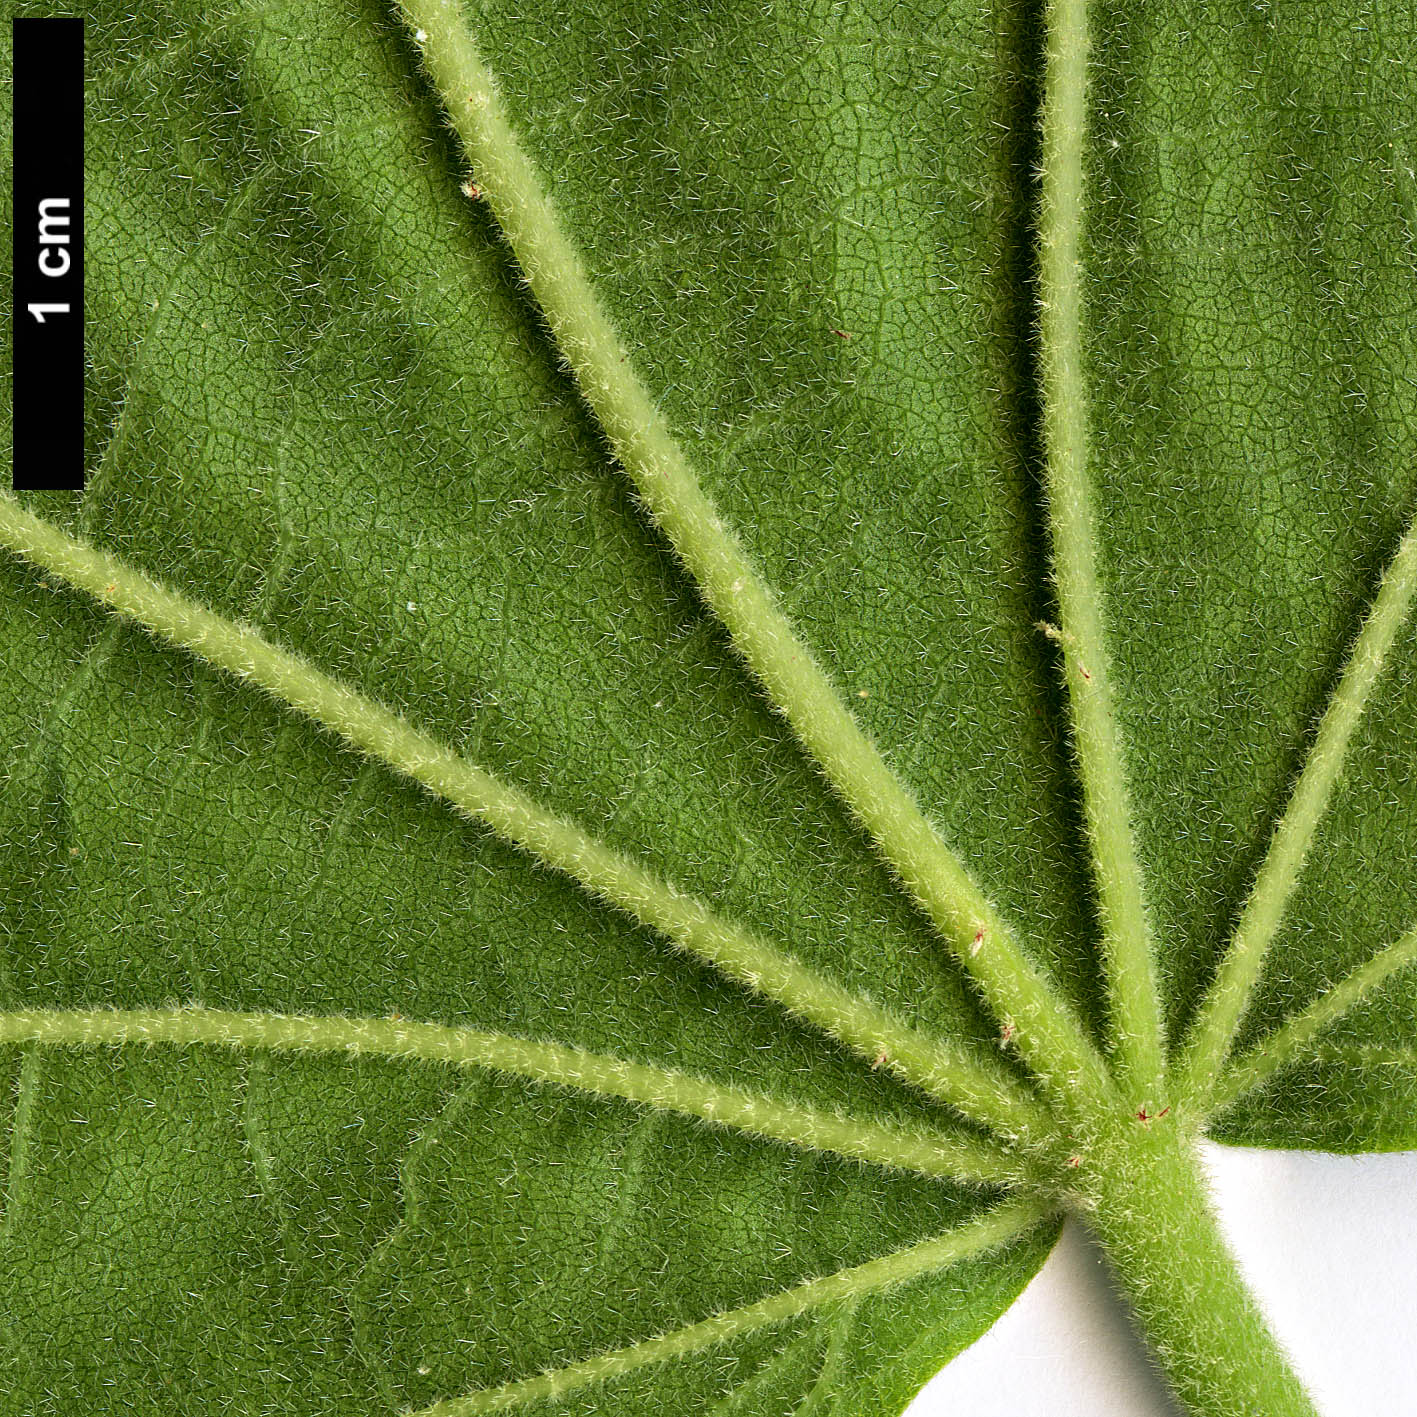 High resolution image: Family: Malvaceae - Genus: Hibiscus - Taxon: paramutabilis